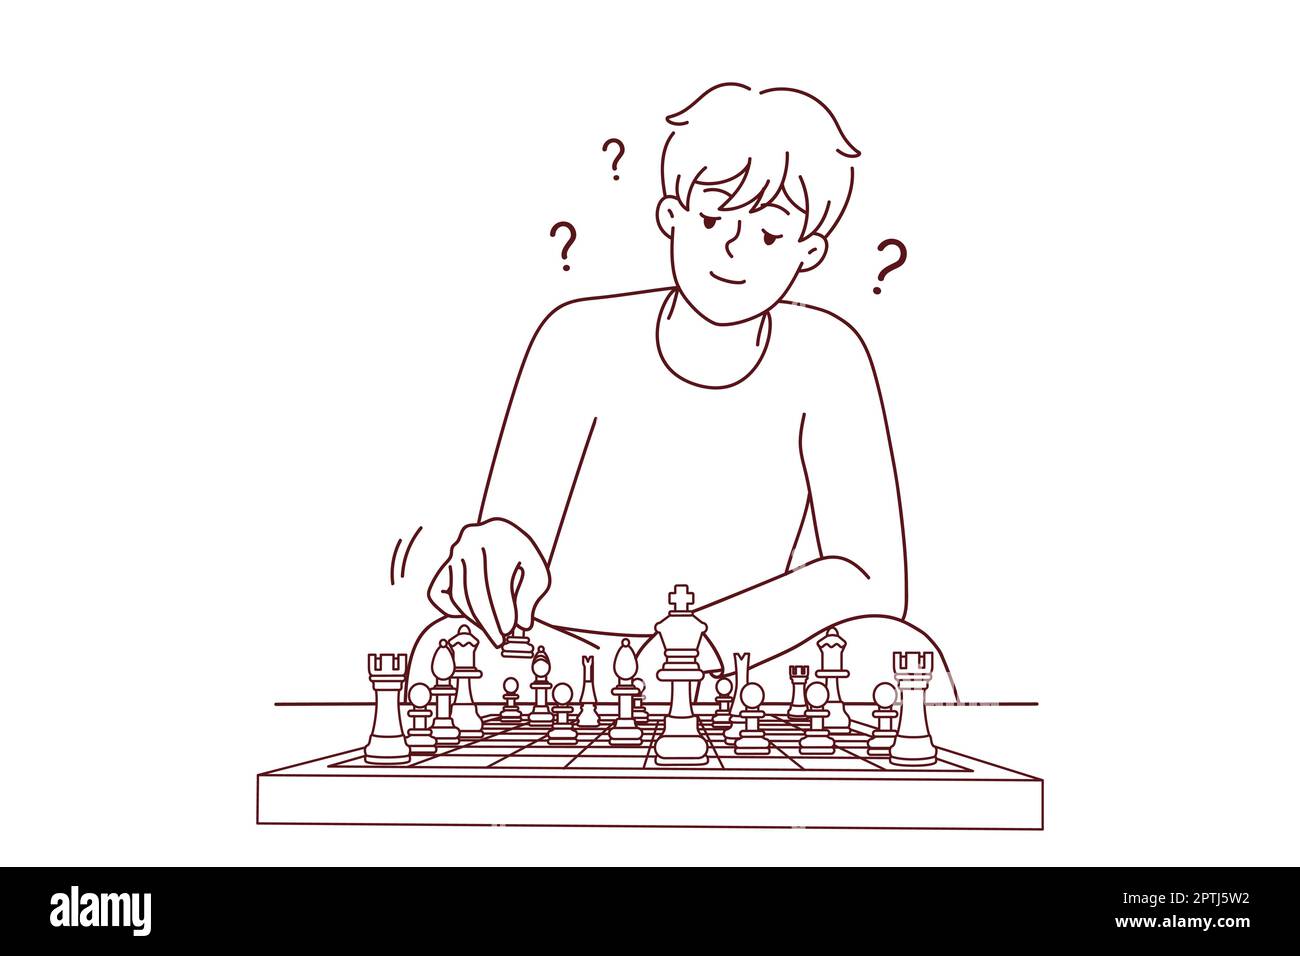 L'homme jouant aux échecs se sent frustré Illustration de Vecteur